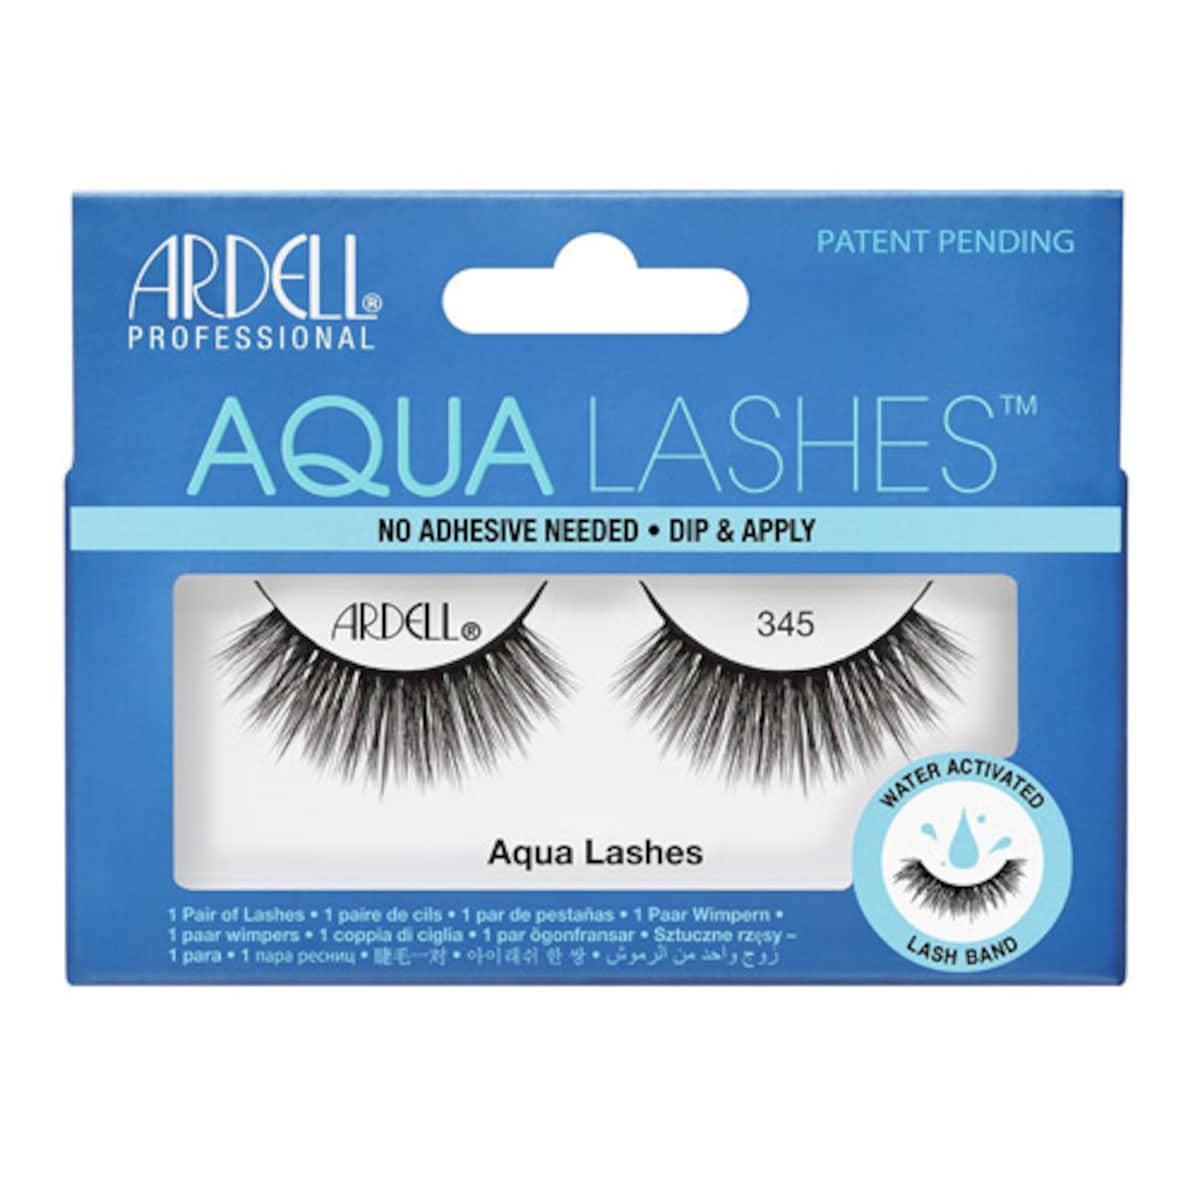 Ardell Aqua Lashes #345 1 Pair of Eyelashes